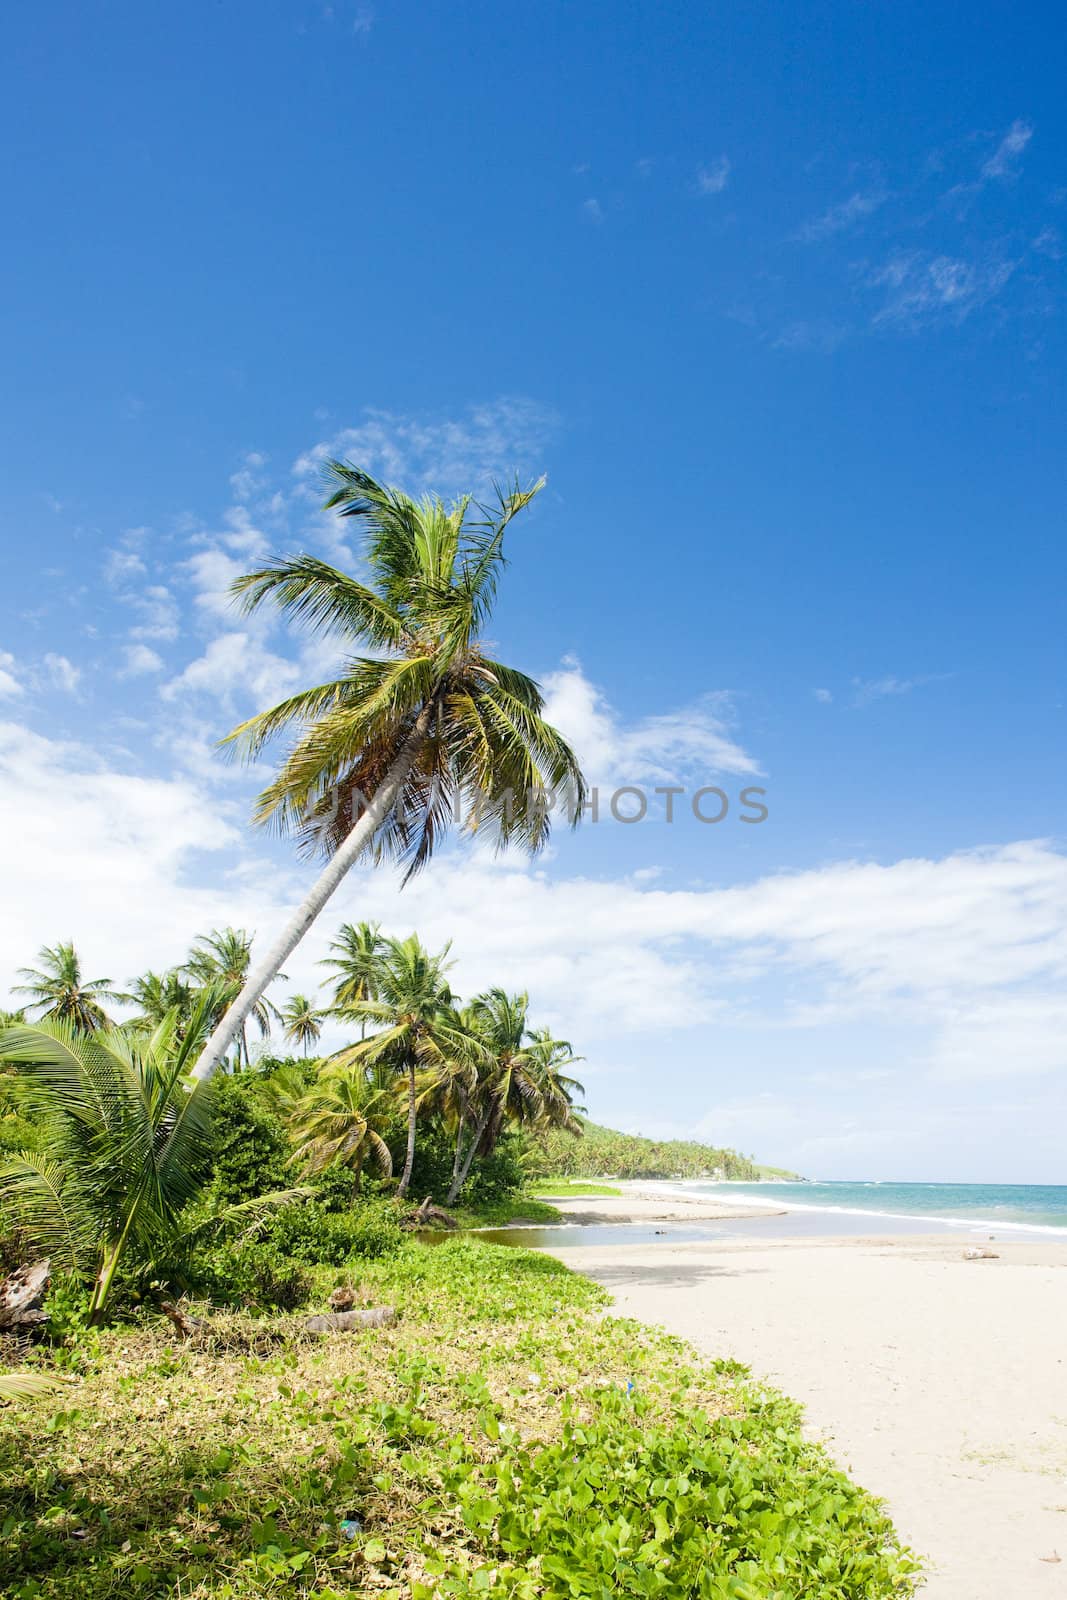 beach







beach, palm, sea, palm tree, caribien, summer